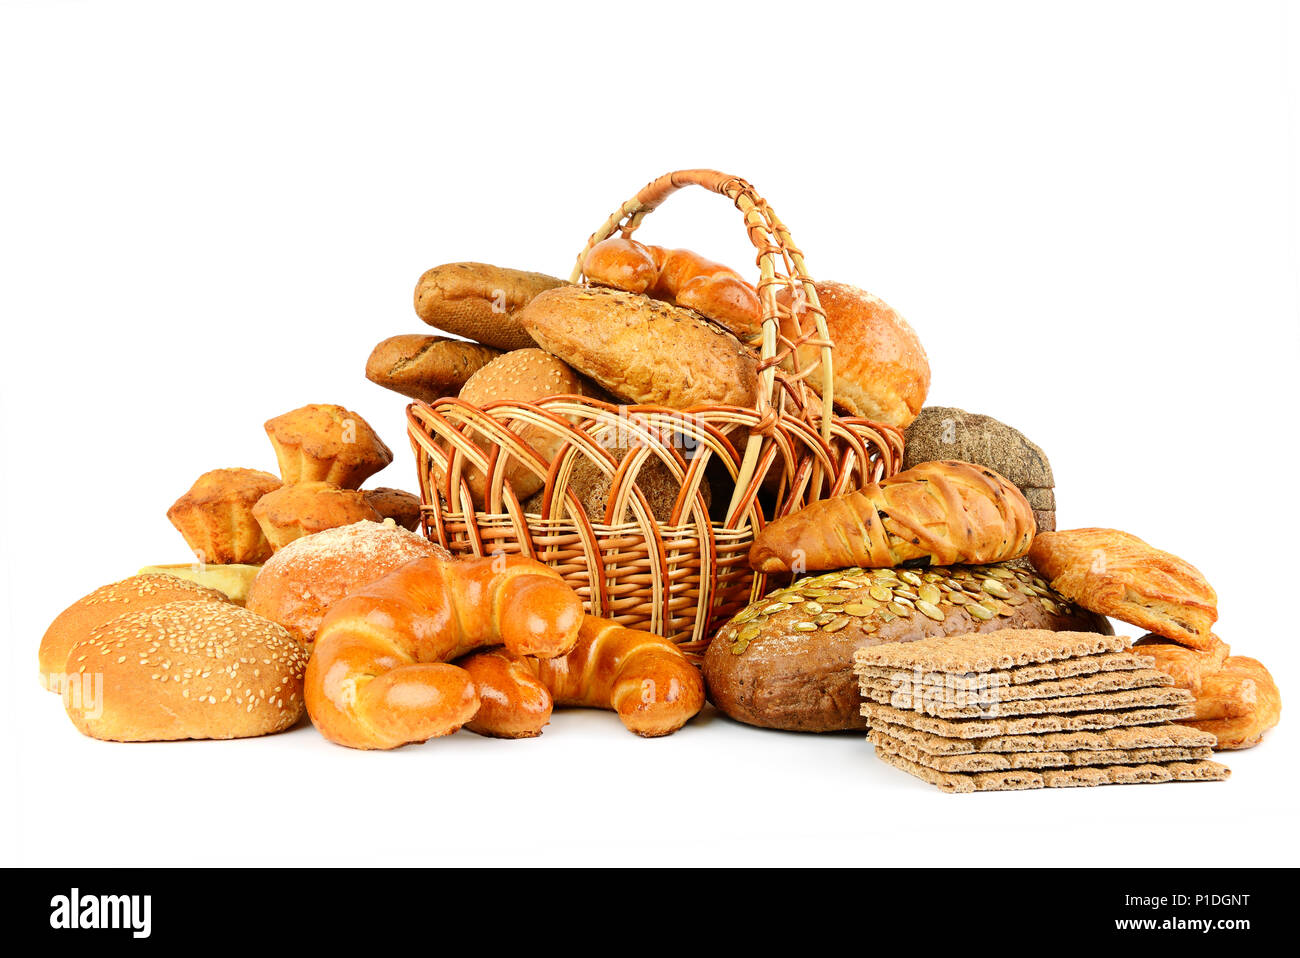 Sammlung von Brot Produkte auf weißem Hintergrund Stockfoto